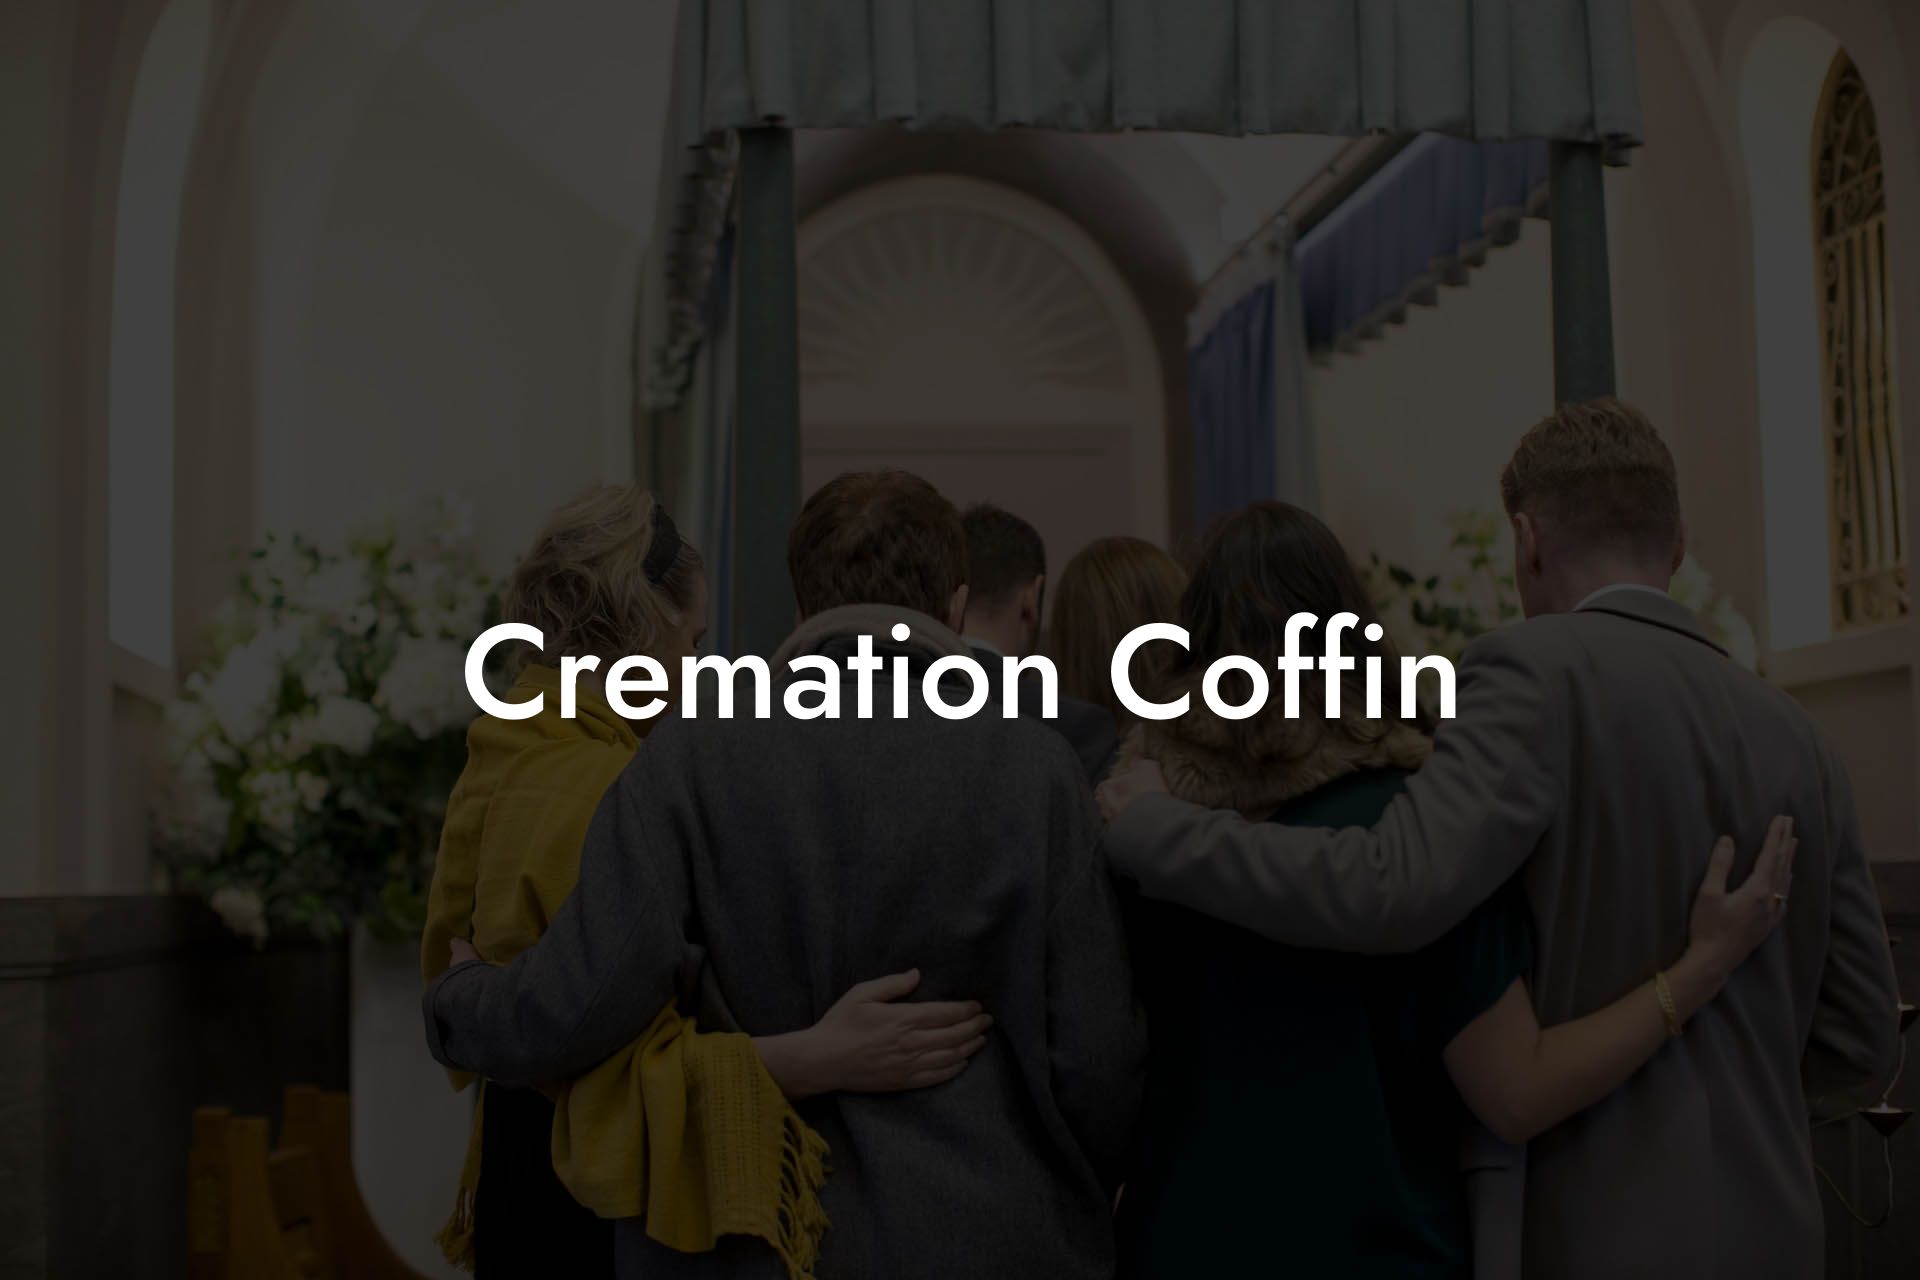 Cremation Coffin